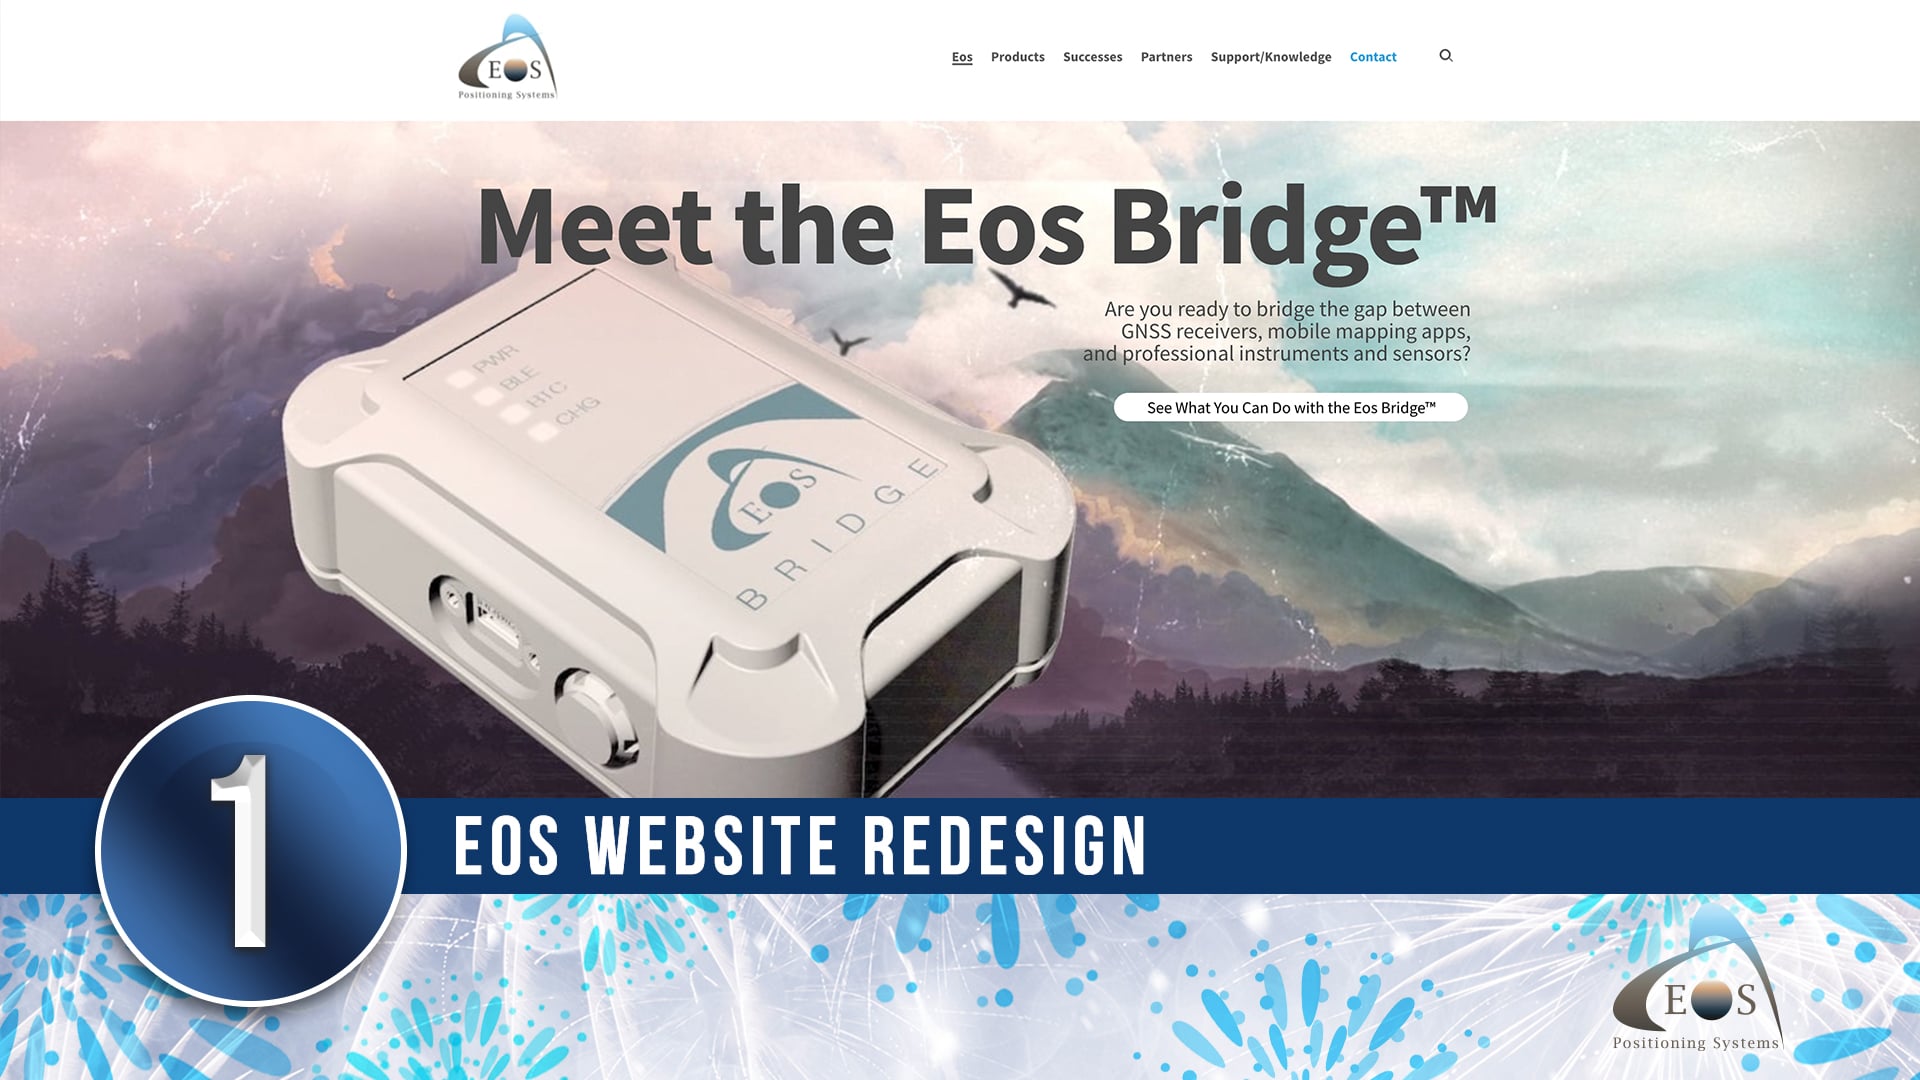 Top 10 of 2021 - 1 Eos Website Redesign